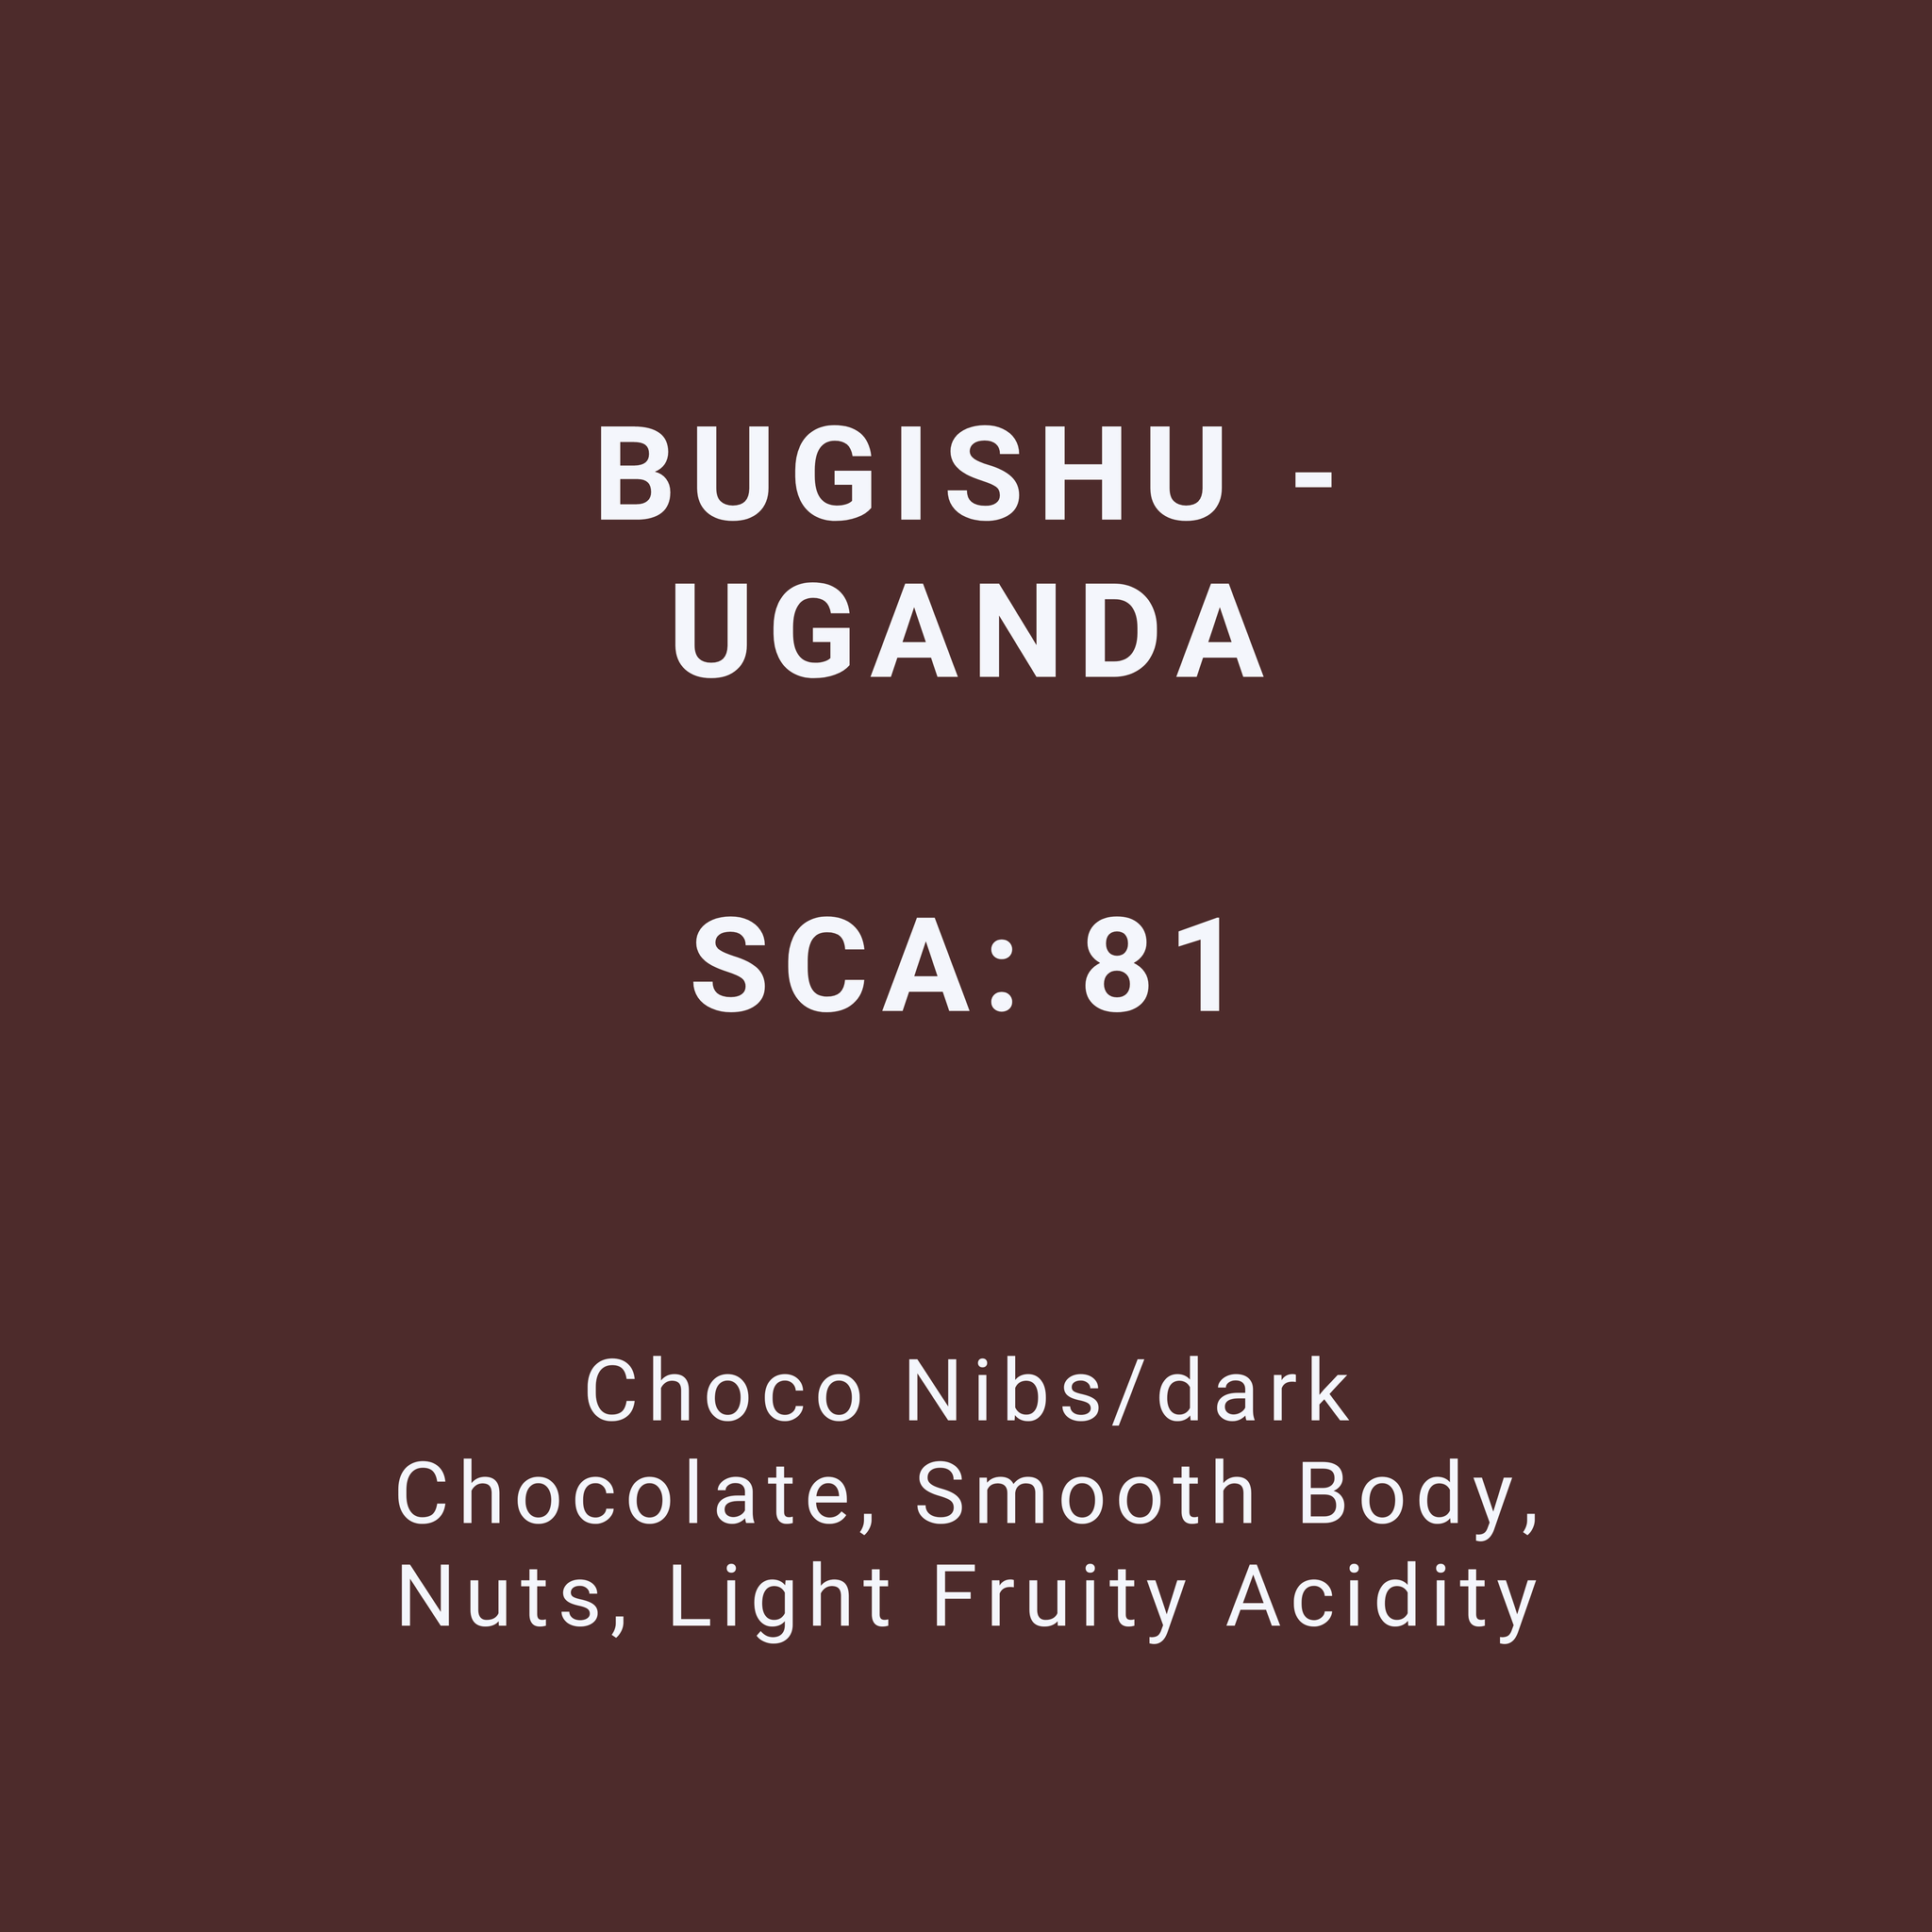 BUGISHU - UGANDA